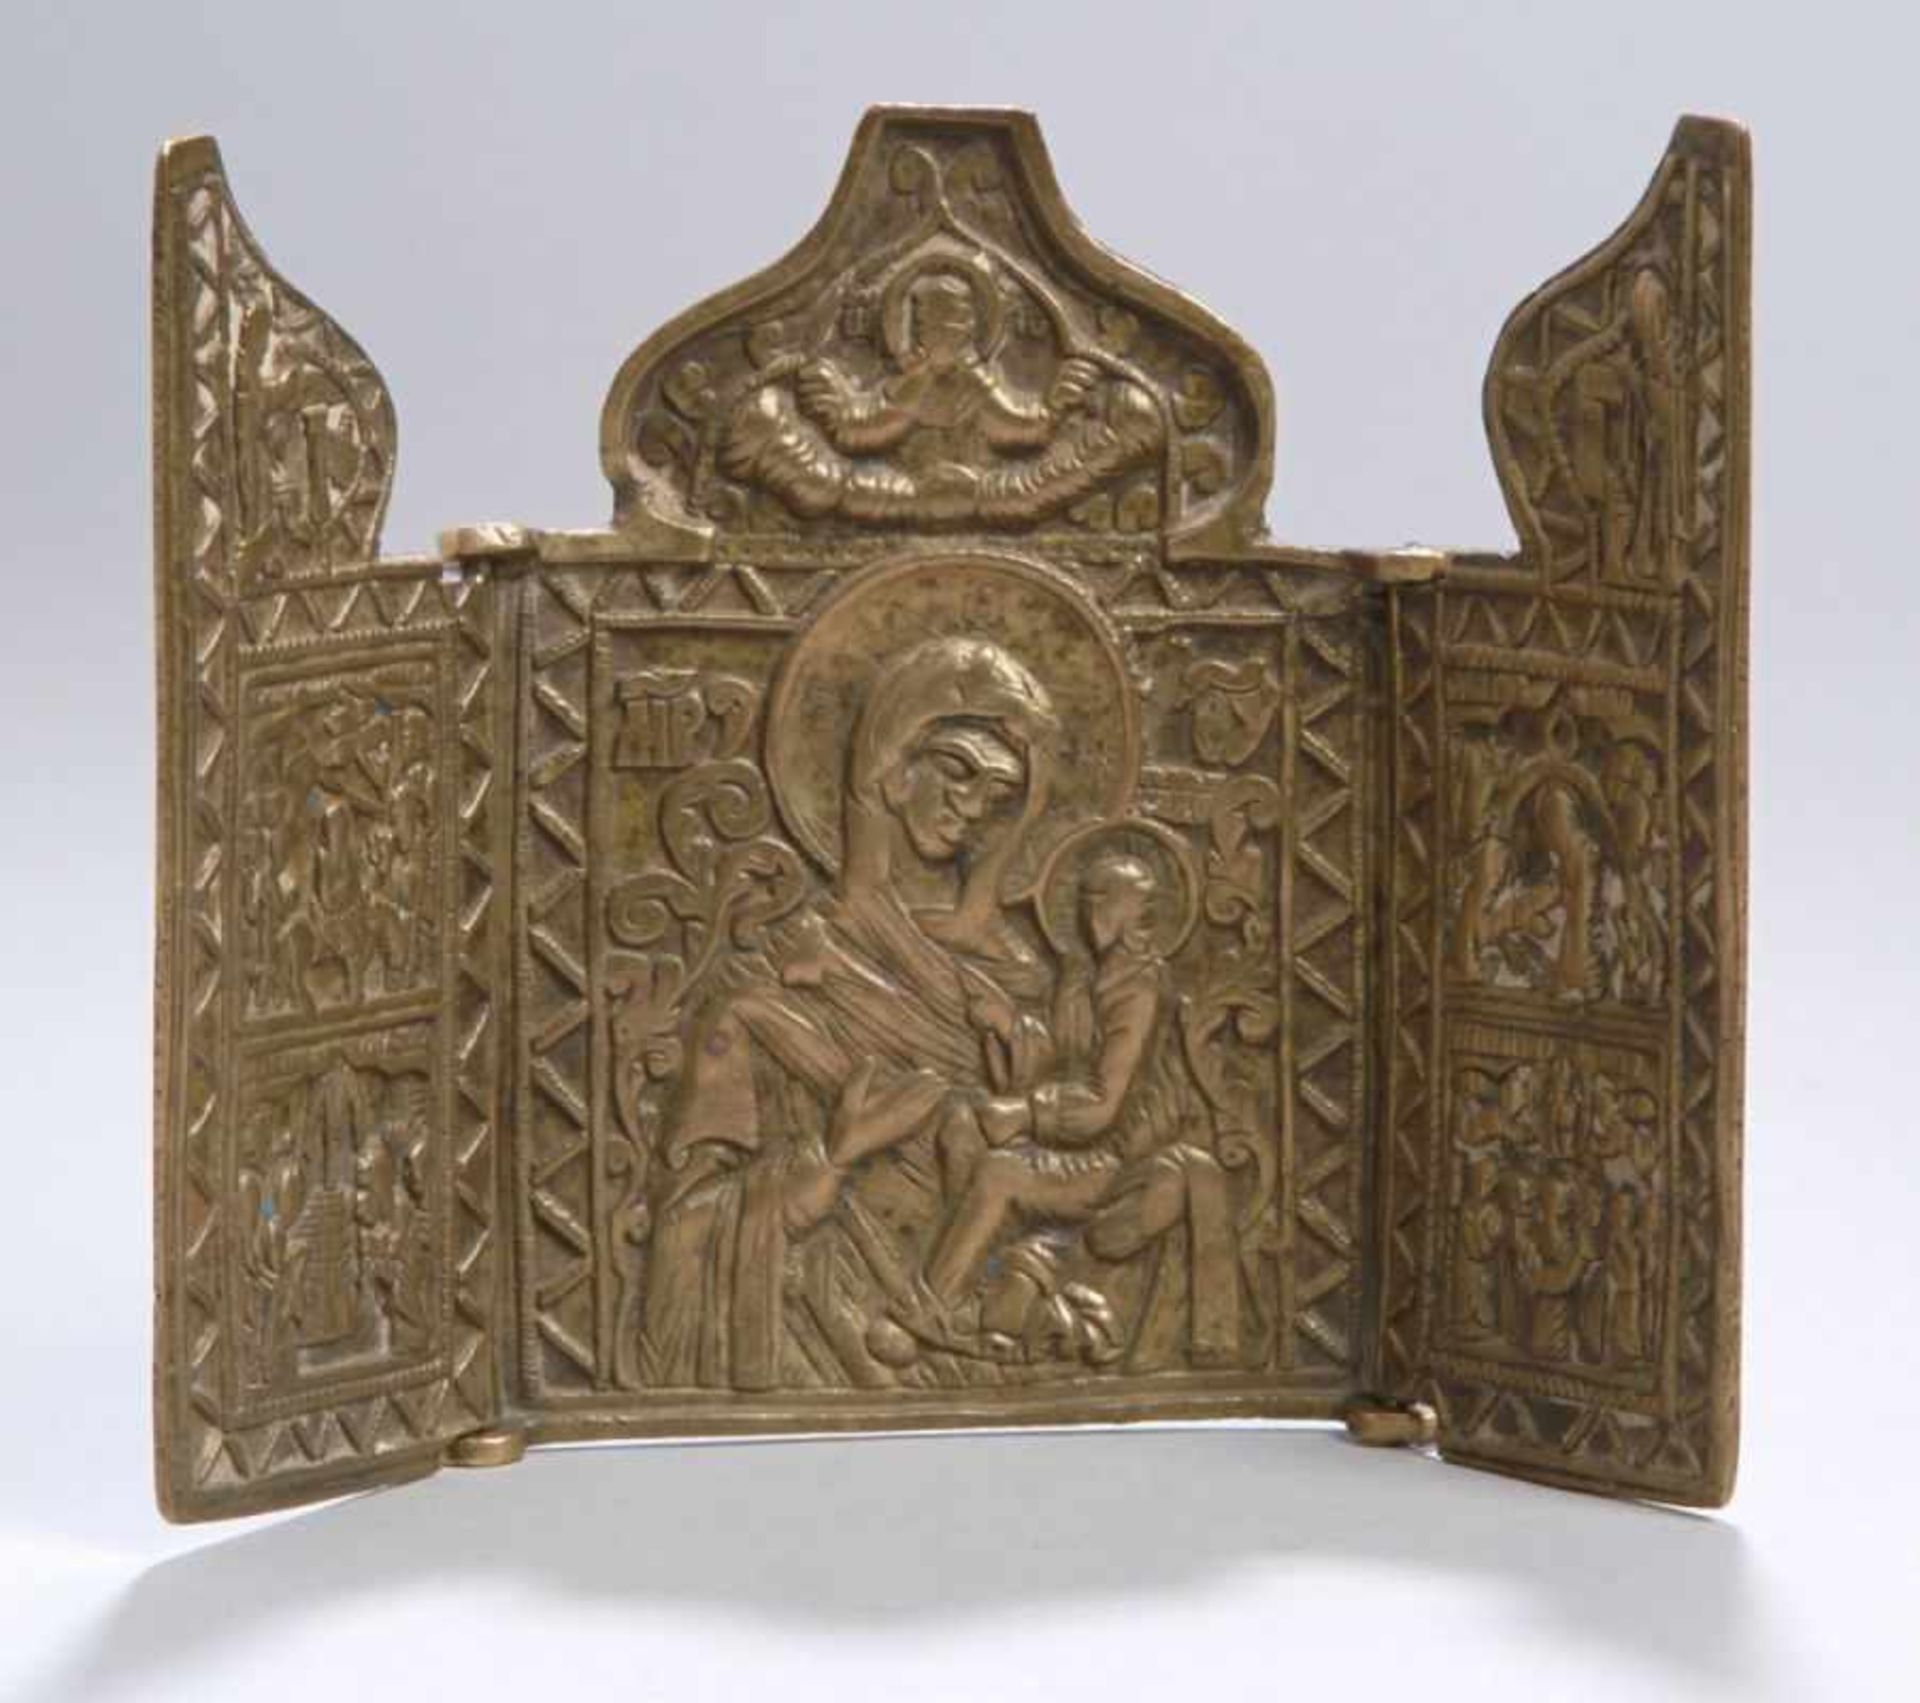 Kleiner Bronze-Flügelaltar bzw. -Reiseikone, Russland, 19. Jh., 3-flügliges Triptychon,bestehend aus